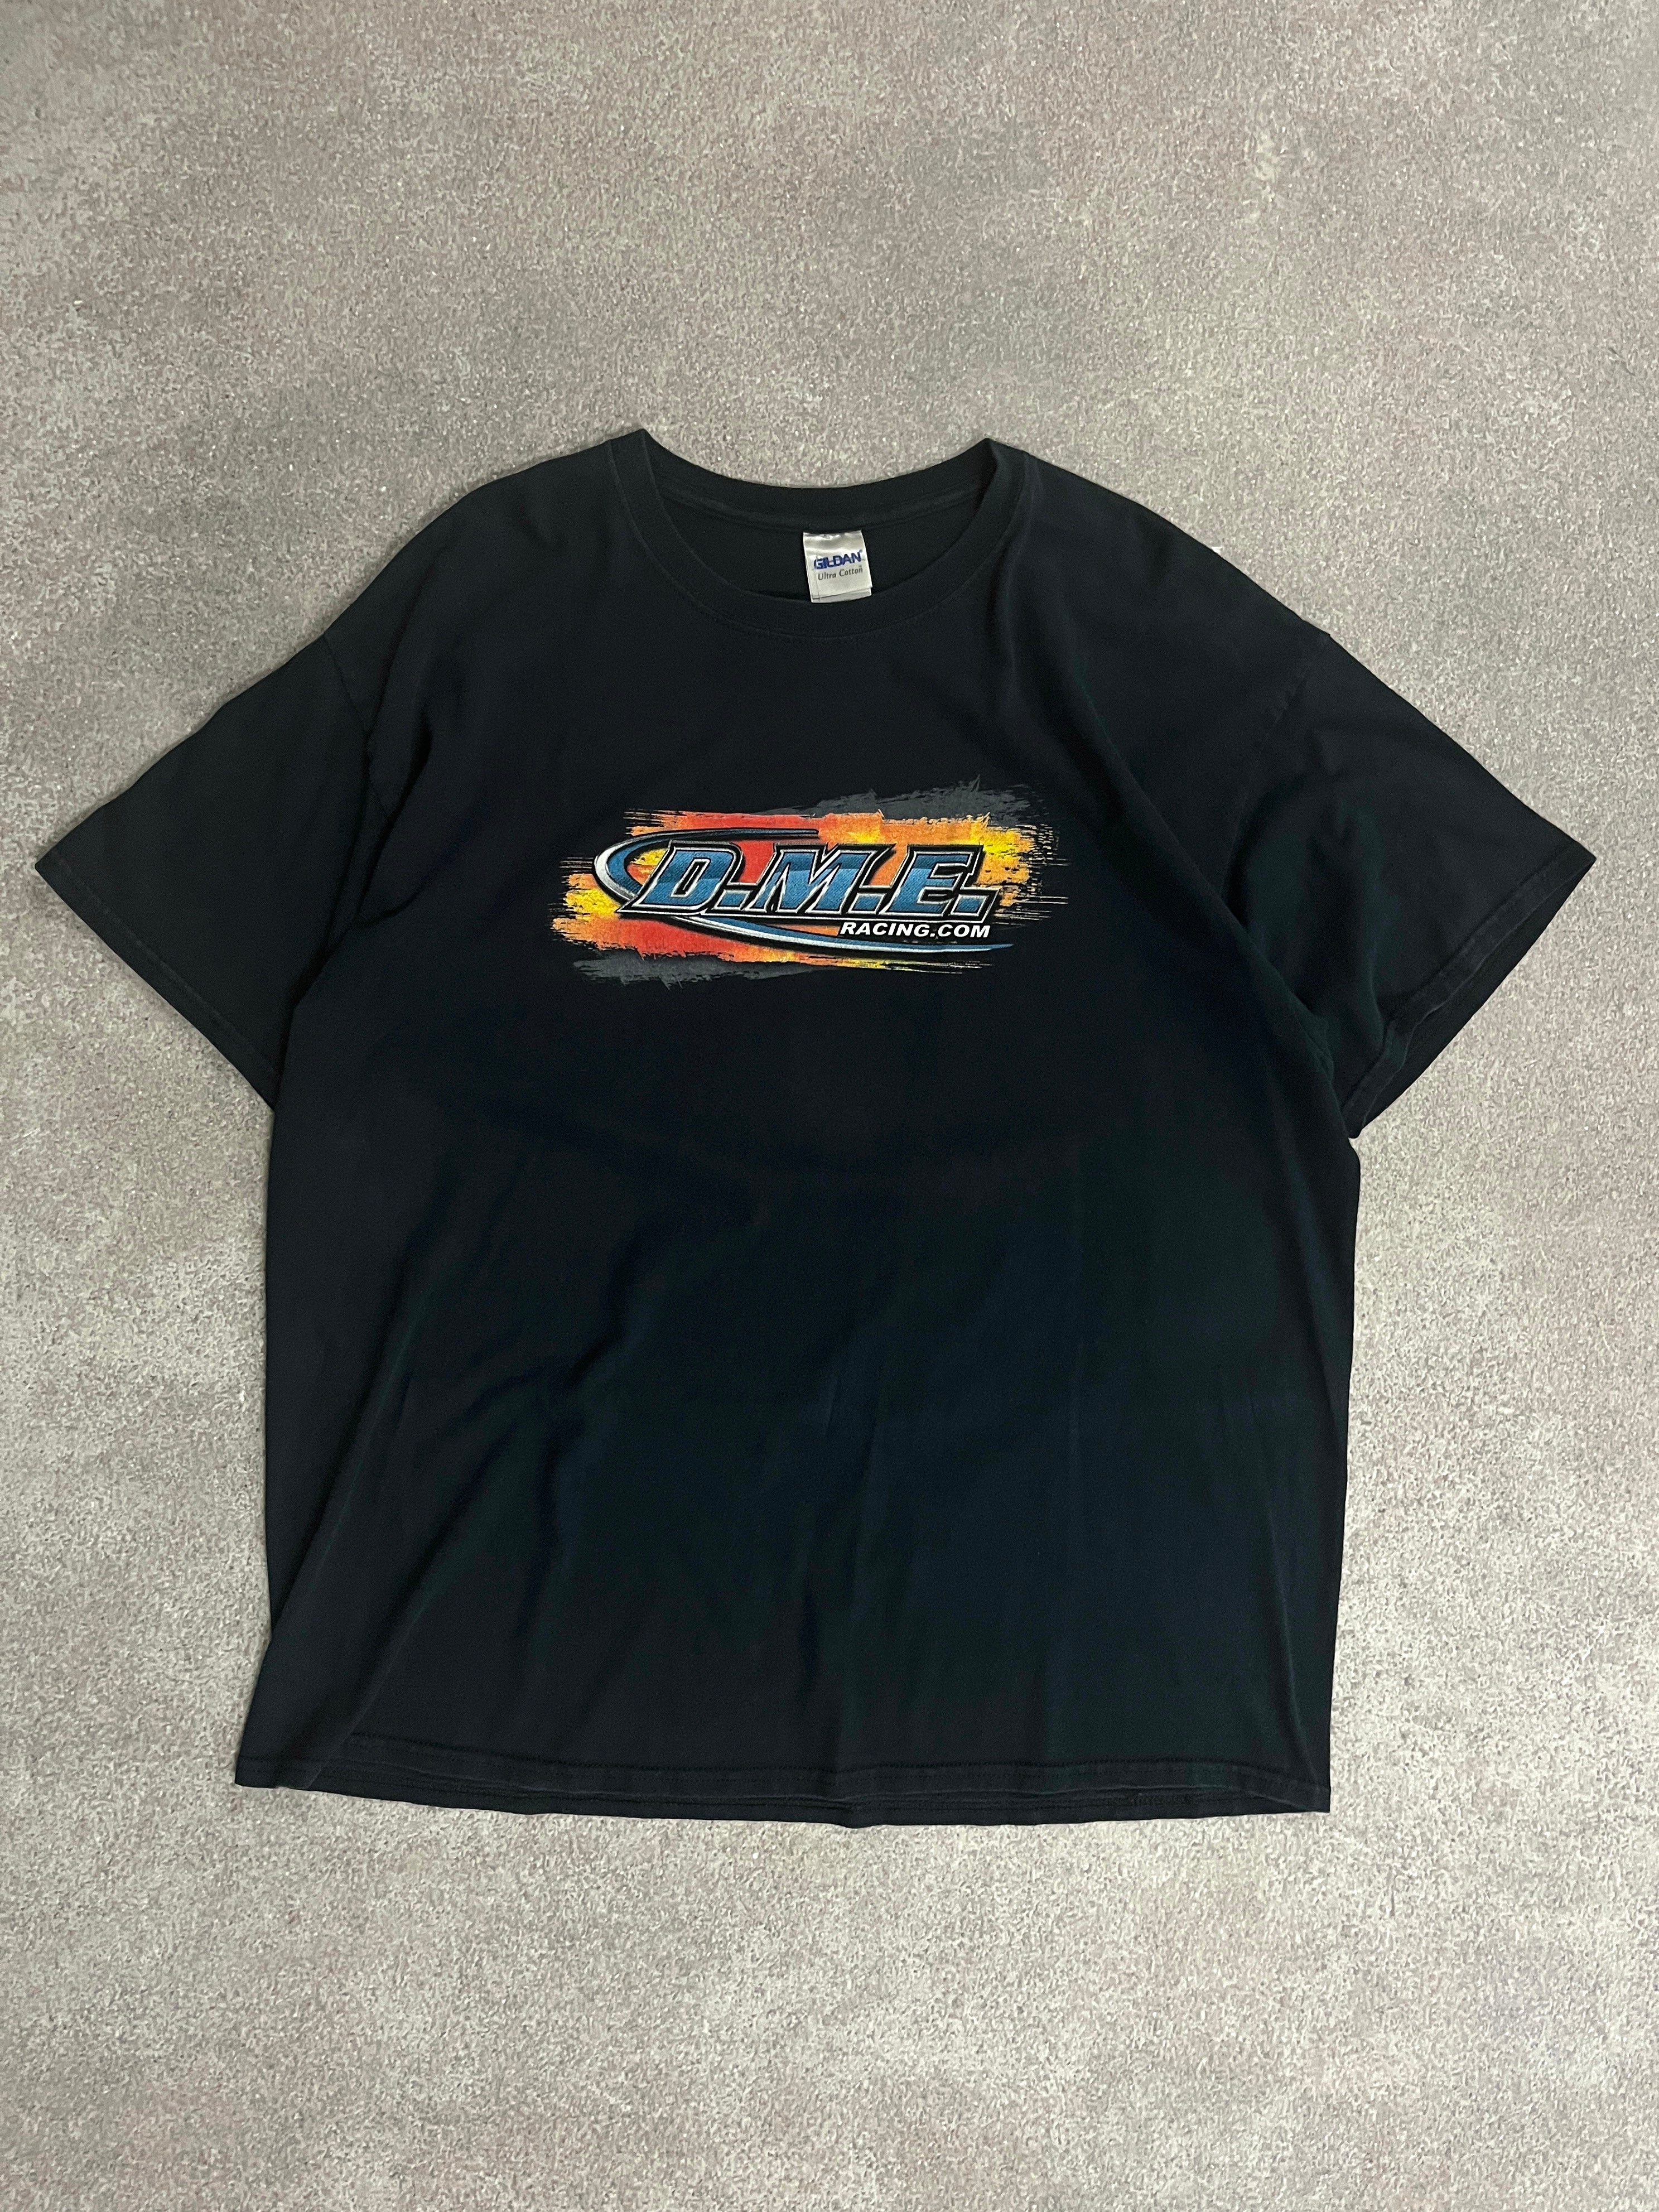 Vintage DME Racing Tshirt Black // Medium - RHAGHOUSE VINTAGE